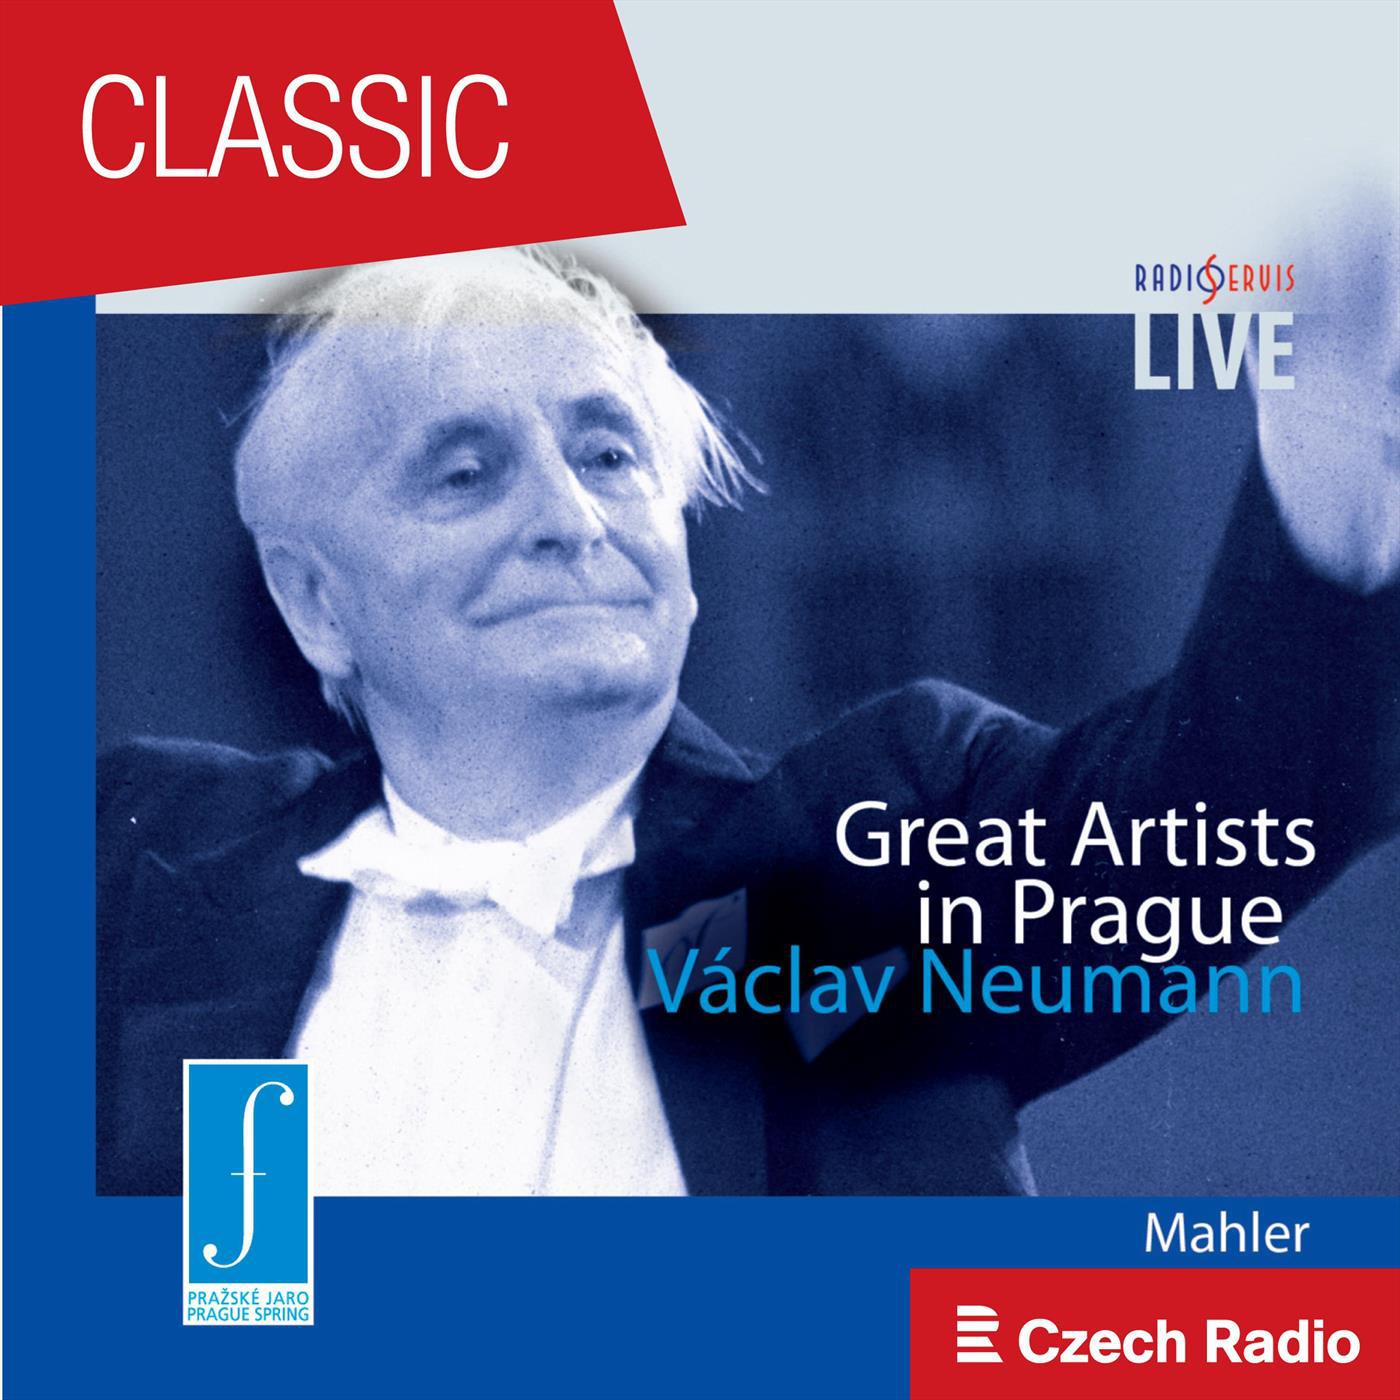 Great Artists in Prague: Va clav Neumann  Mahler  Live at the Prague Spring Festival